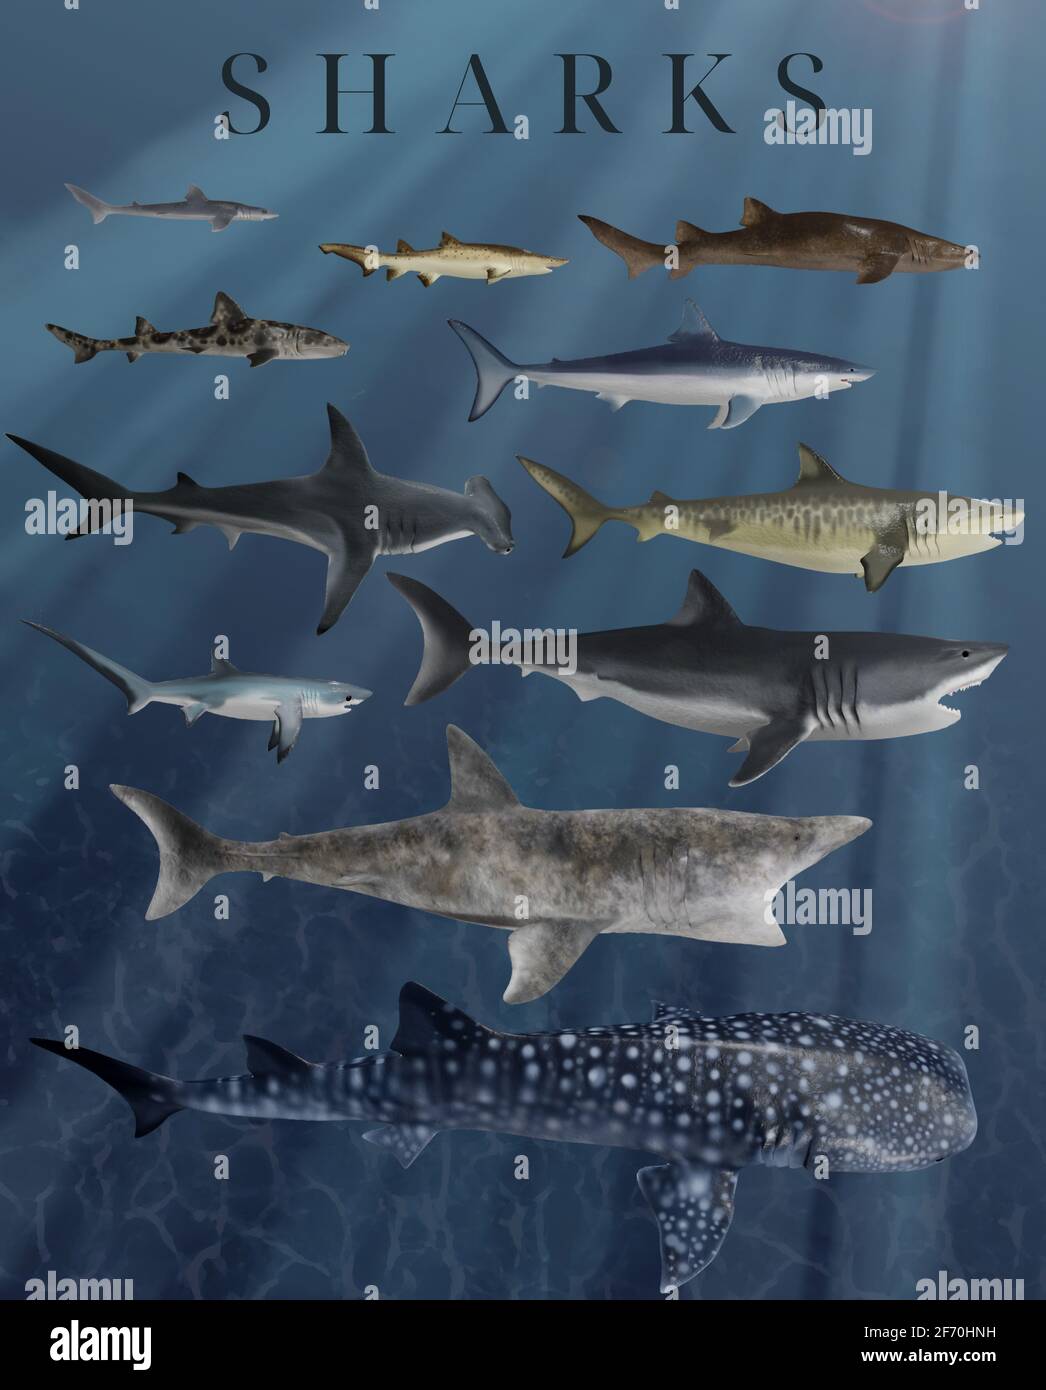 Shark Species Poster